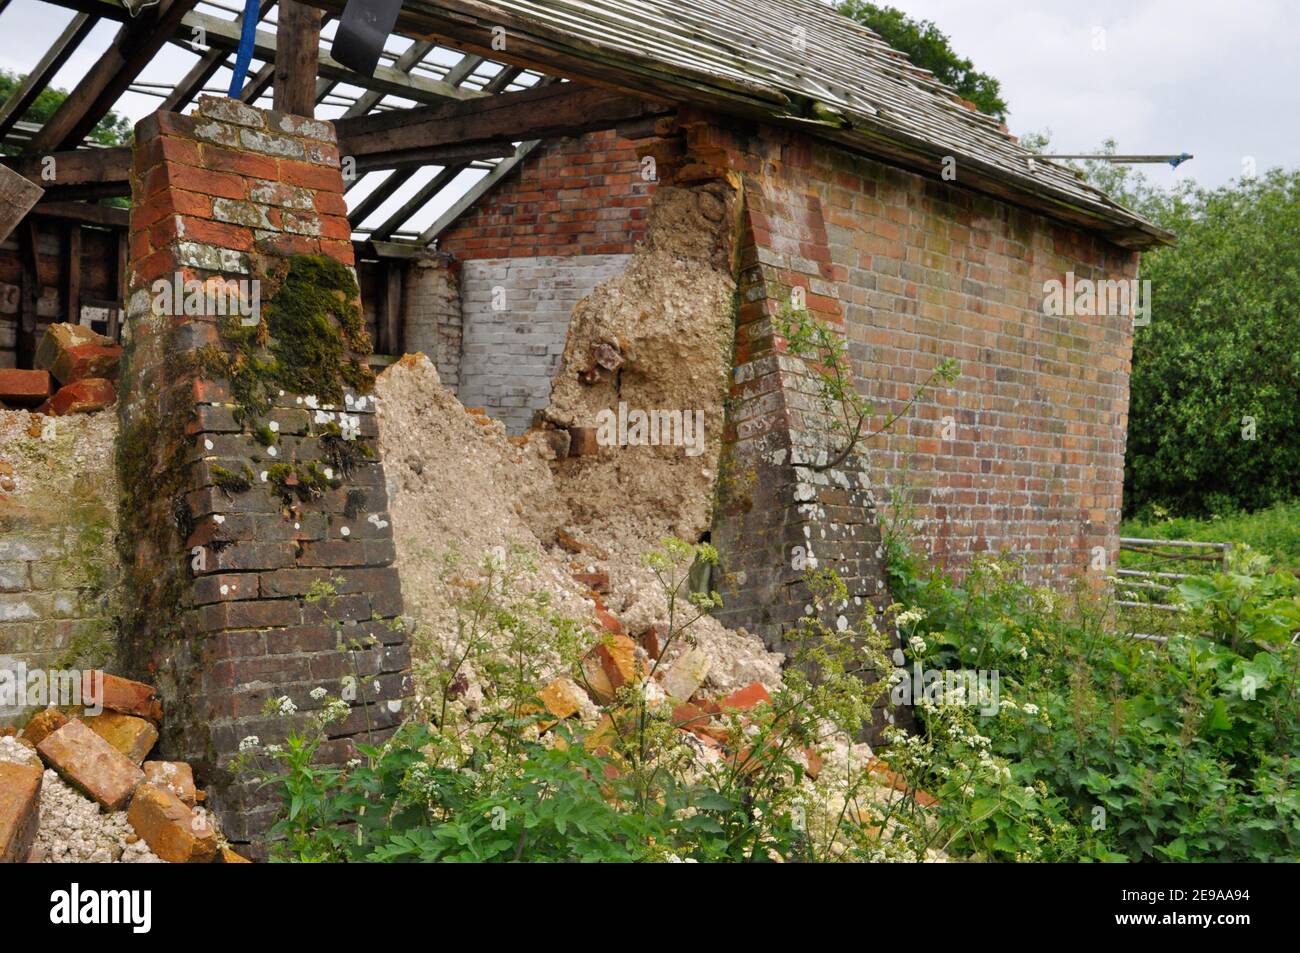 Antiguo granero de ladrillo construido con escombros de tiza se derrumba A pesar de los contrafuertes de ladrillo.Hampshire.UK Foto de stock